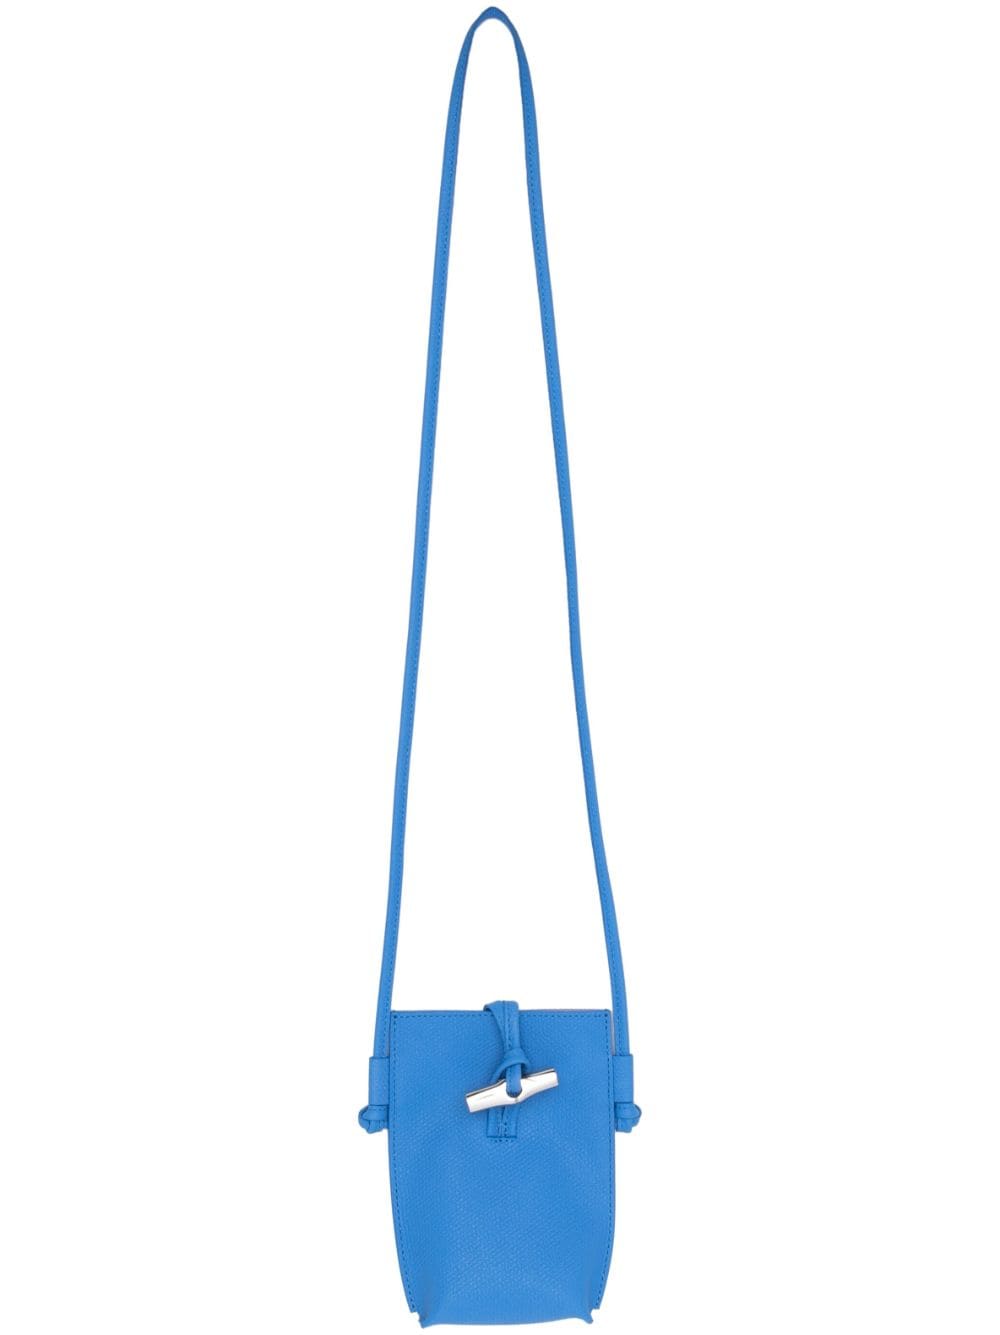 Longchamp Roseau leather phone holder, Blue